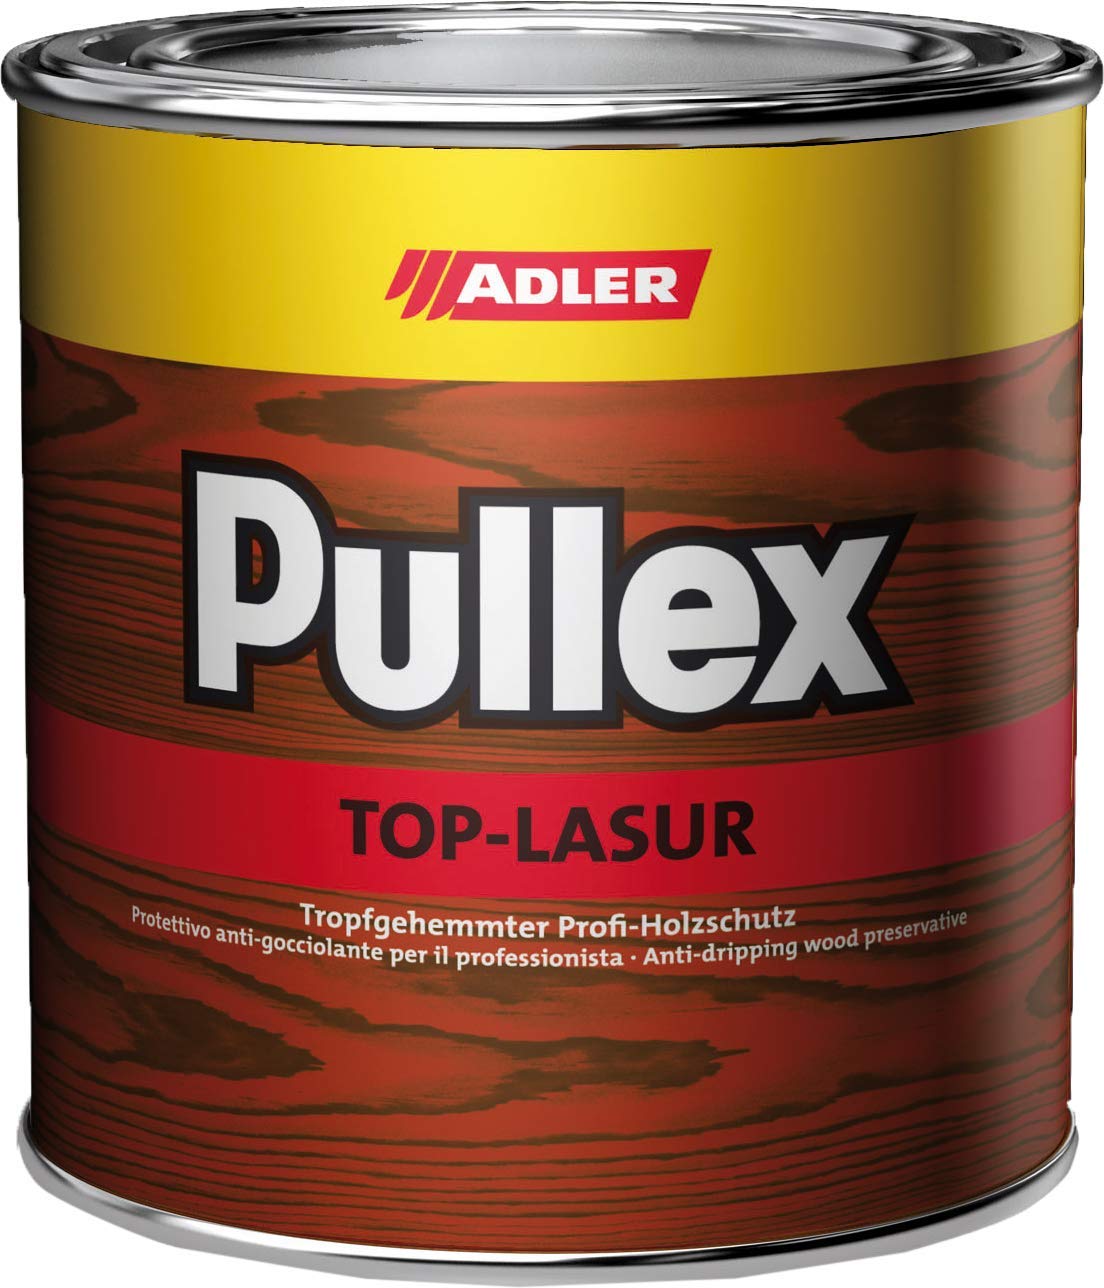 ADLER Pullex Top-Lasur - 2,5 L Lärche - Tropfgehemmte Holzlasur in Profi-Qualität für Holz außen - Lasur in verschiedenen Holzfarbtönen